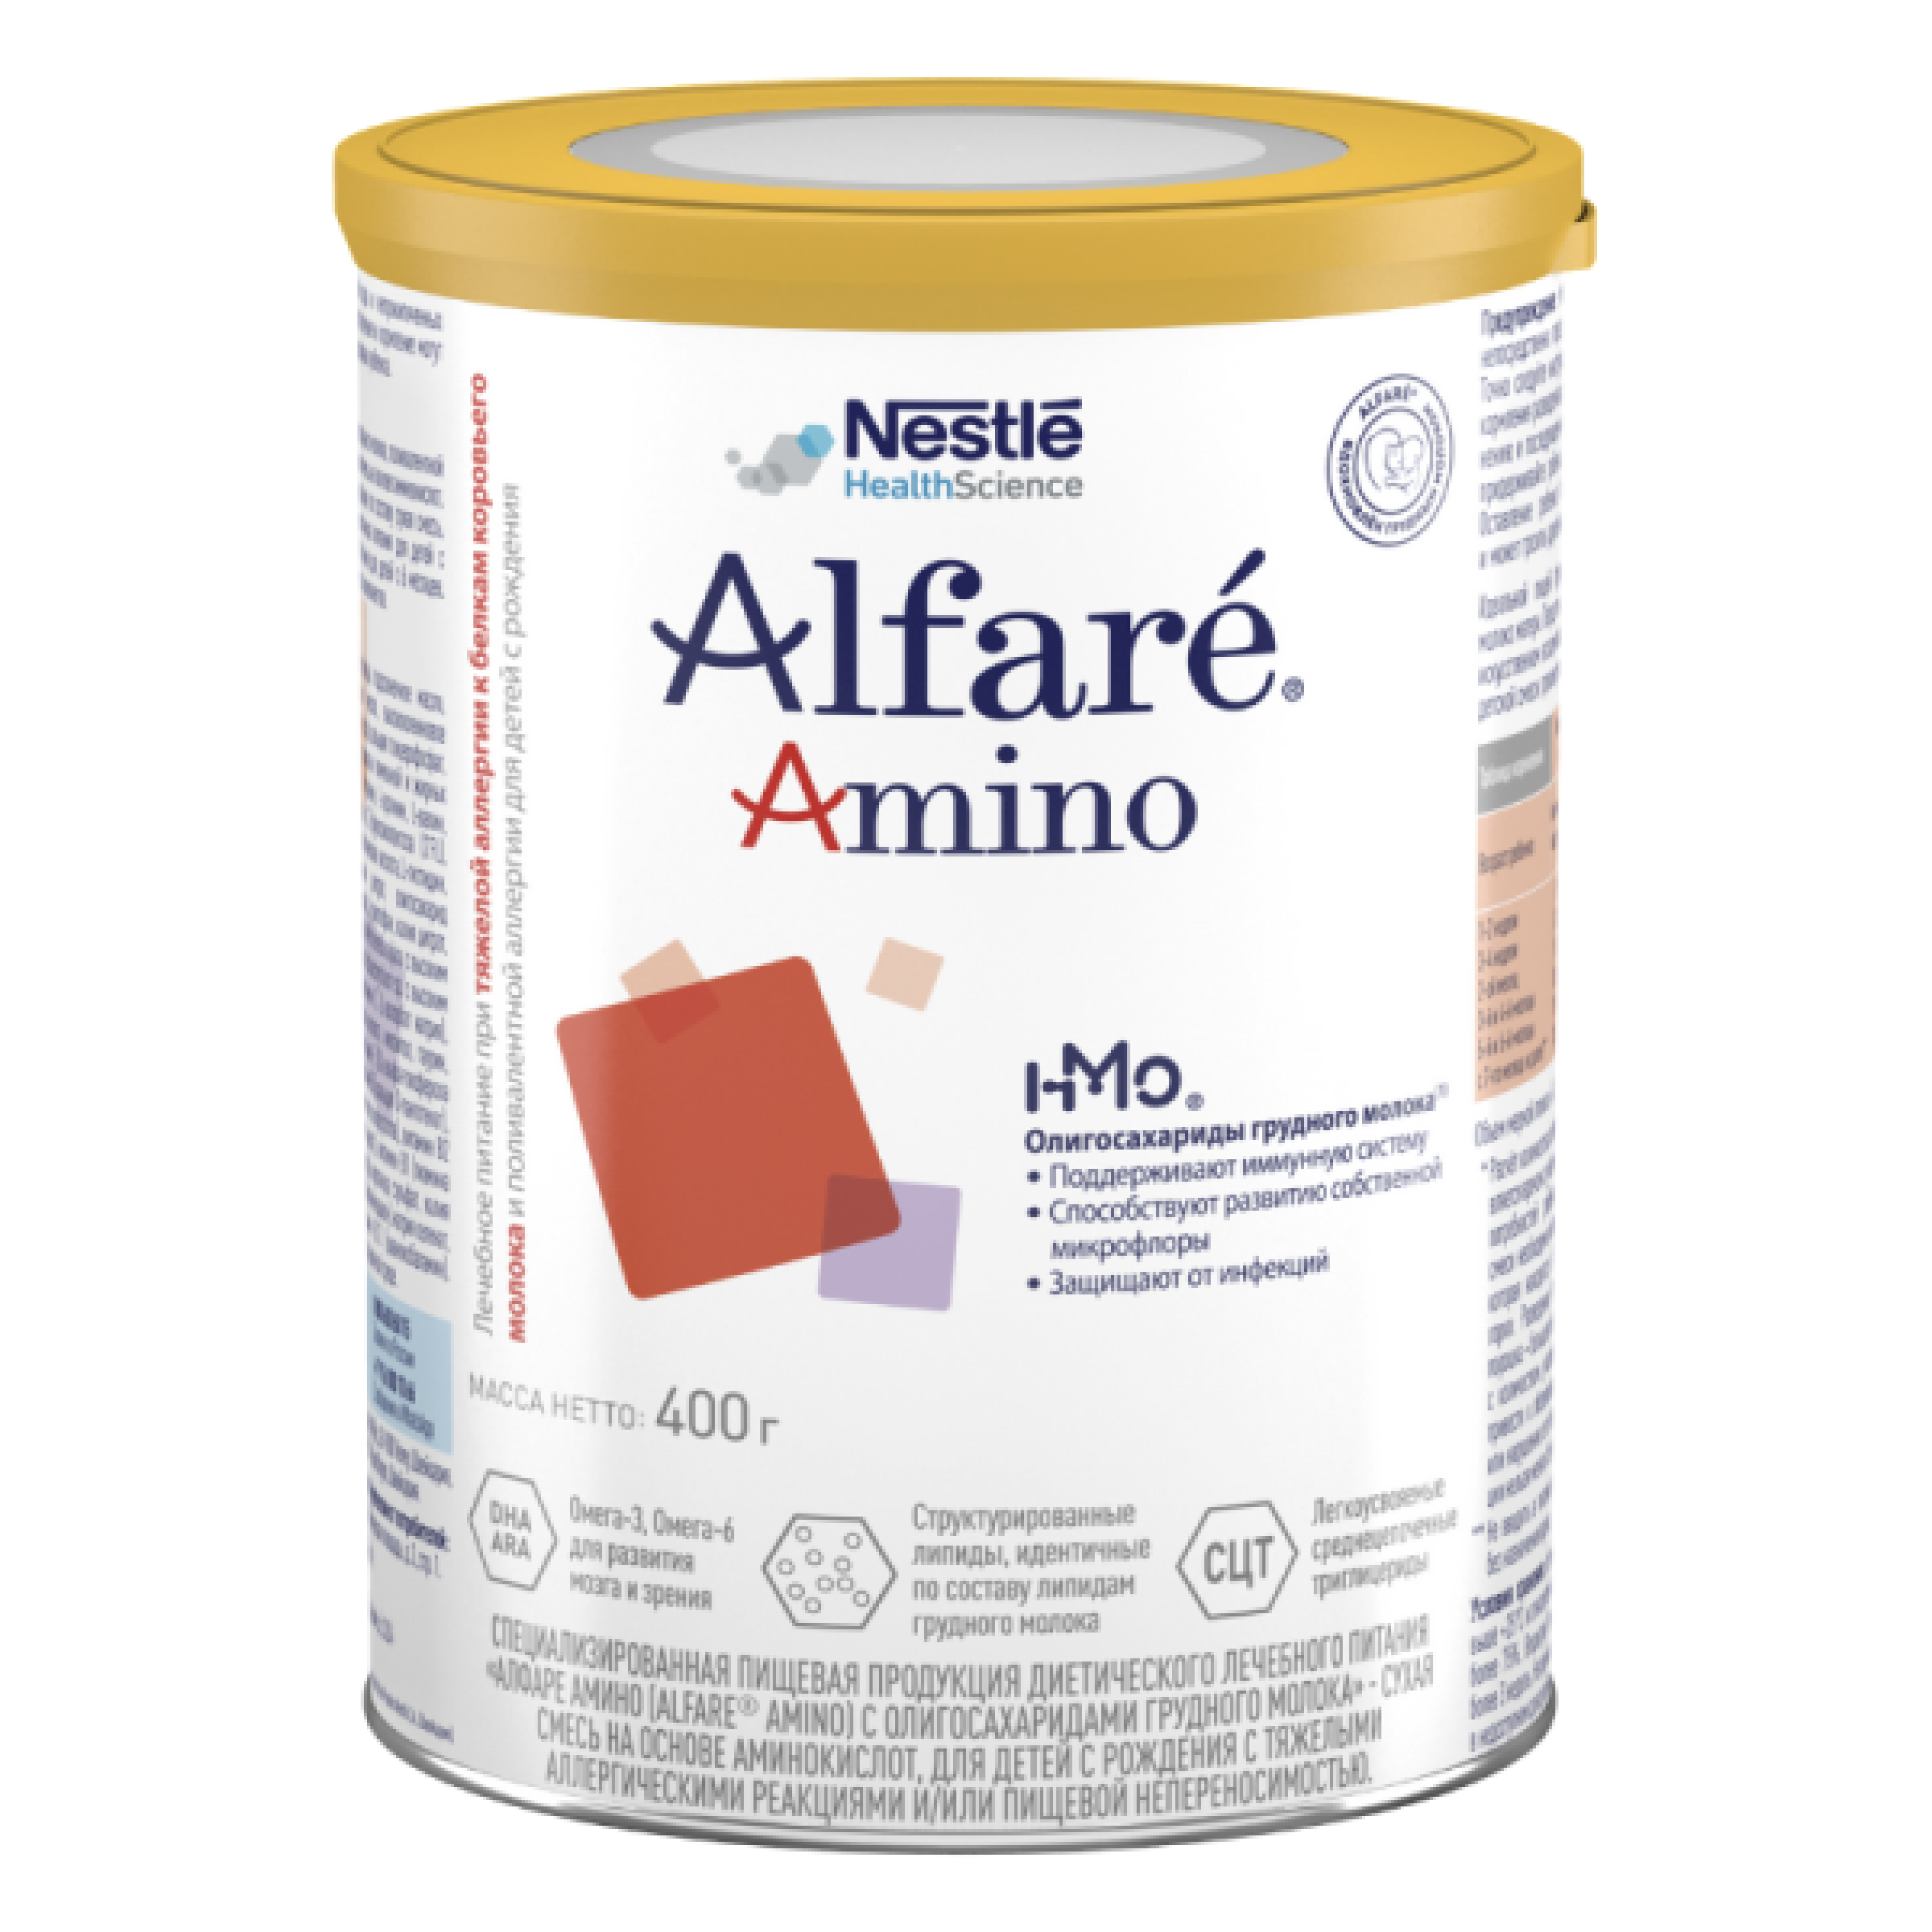 Лечебная смесь для детей Alfare Amino HMO, 400 г